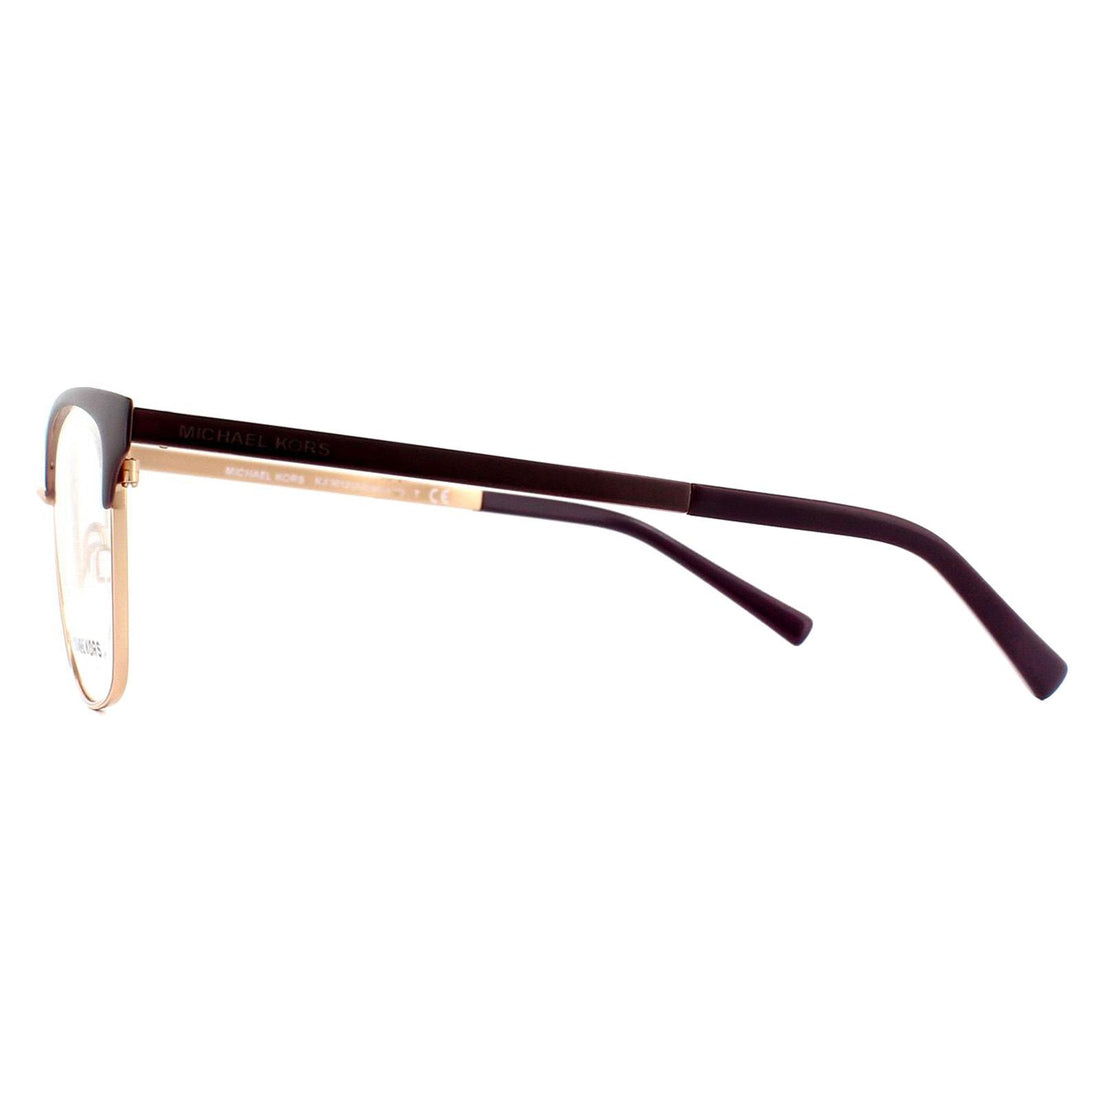 Michael Kors 3012 Adrianna IV Glasses Frames